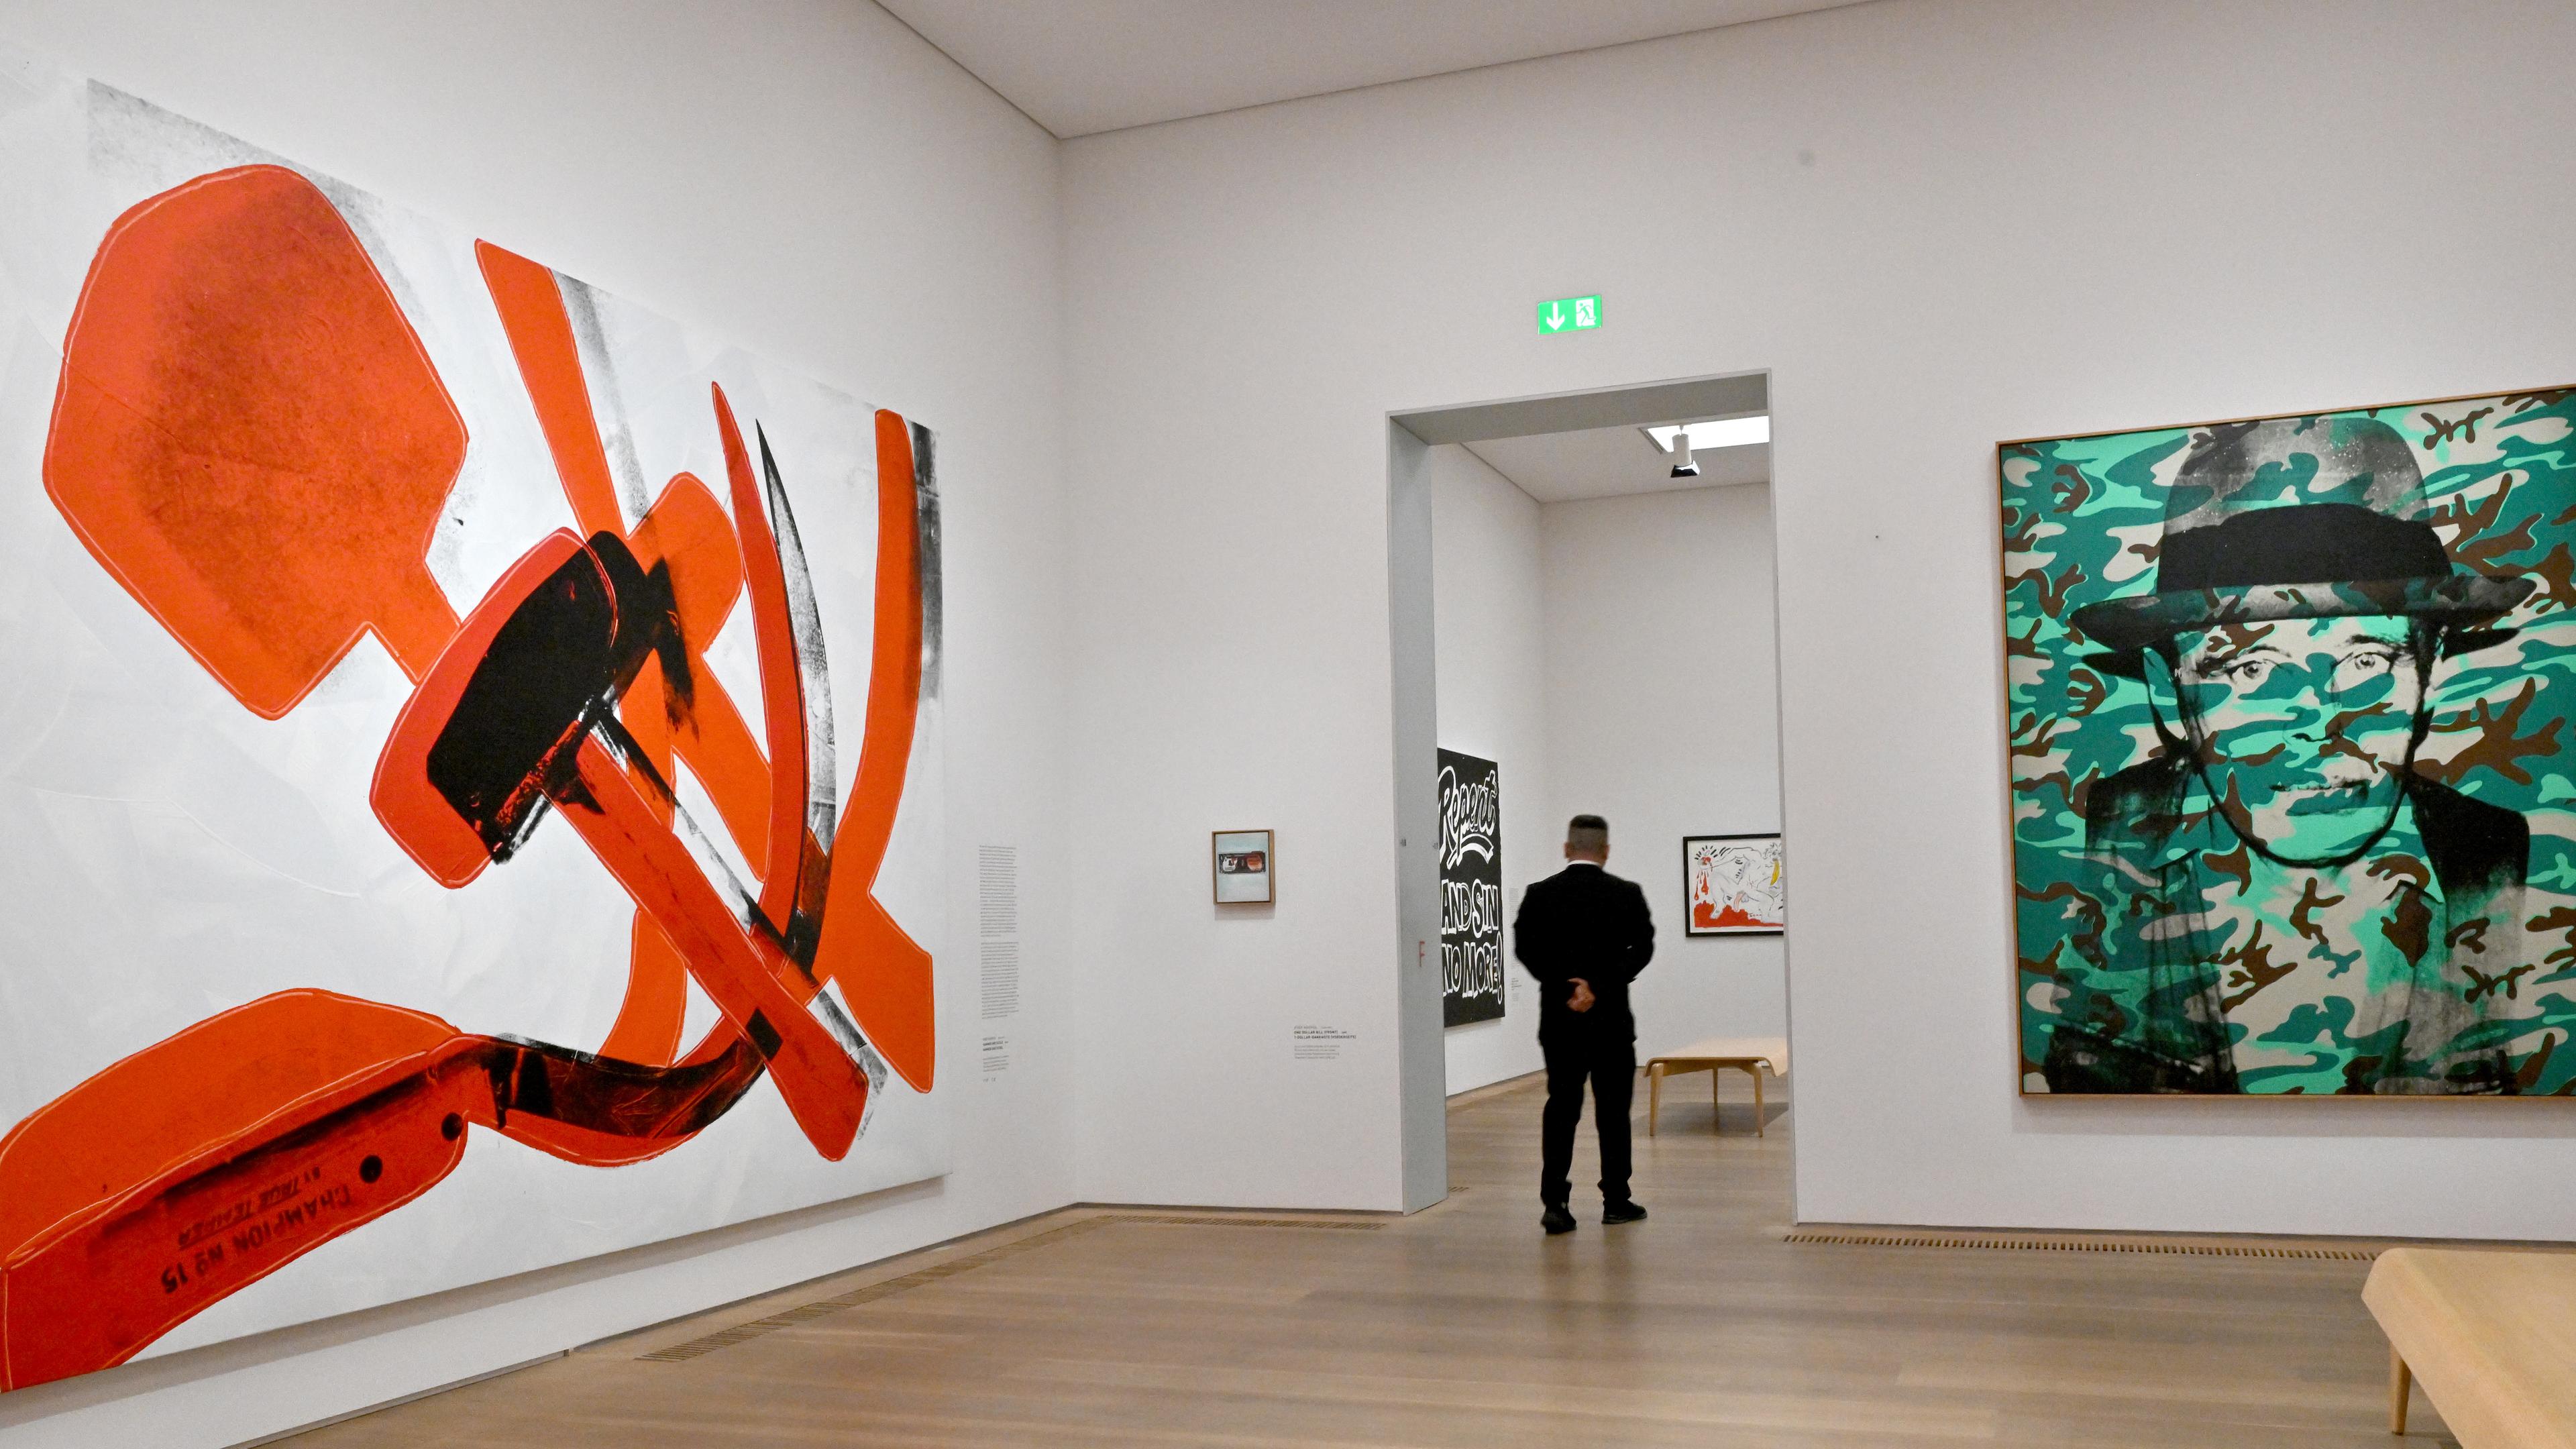  Letzte Vorbereitungen zur neuen Ausstellung «Andy Warhol & Keith Haring. Party of Life» im Museum Brandhorst